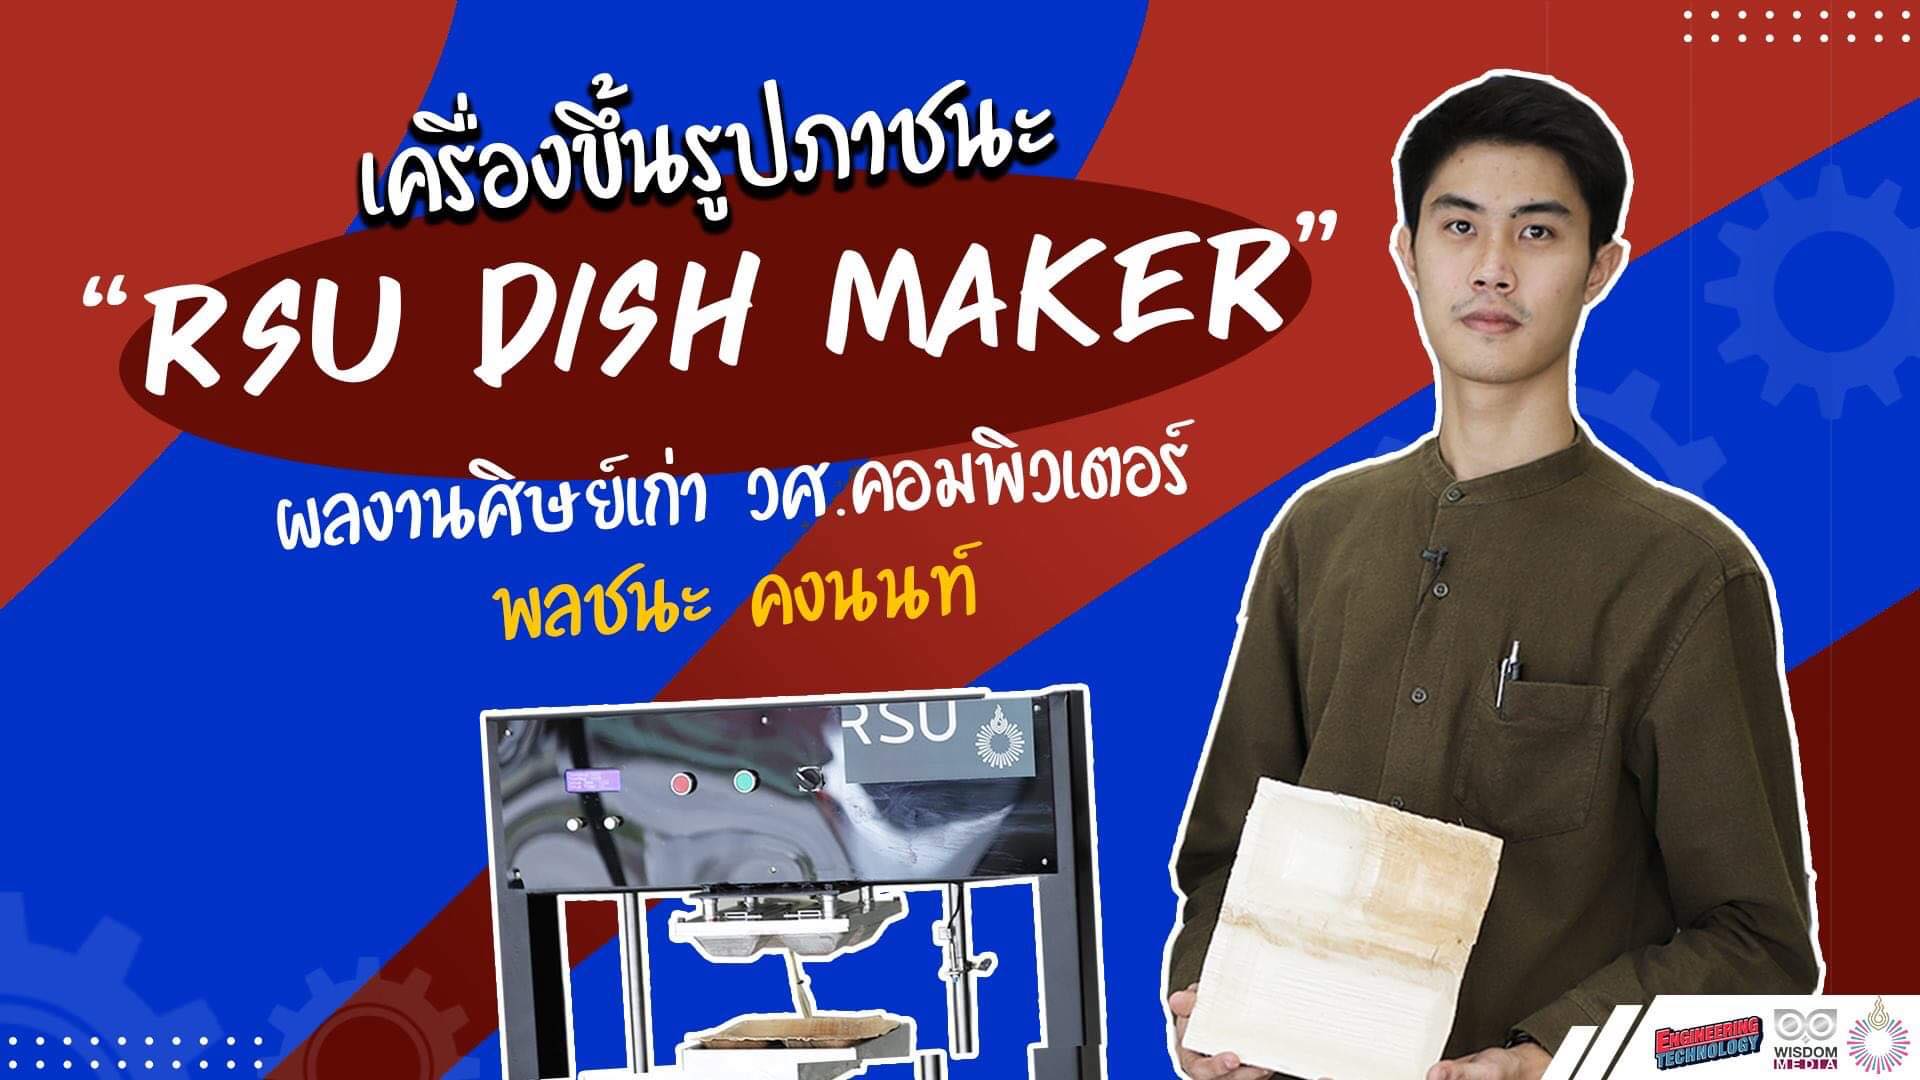 ศิษย์เก่า ม.รังสิต สร้างเครื่องขึ้นรูปภาชนะจากวัตถุดิบธรรมชาติ “RSU DISH MAKER”